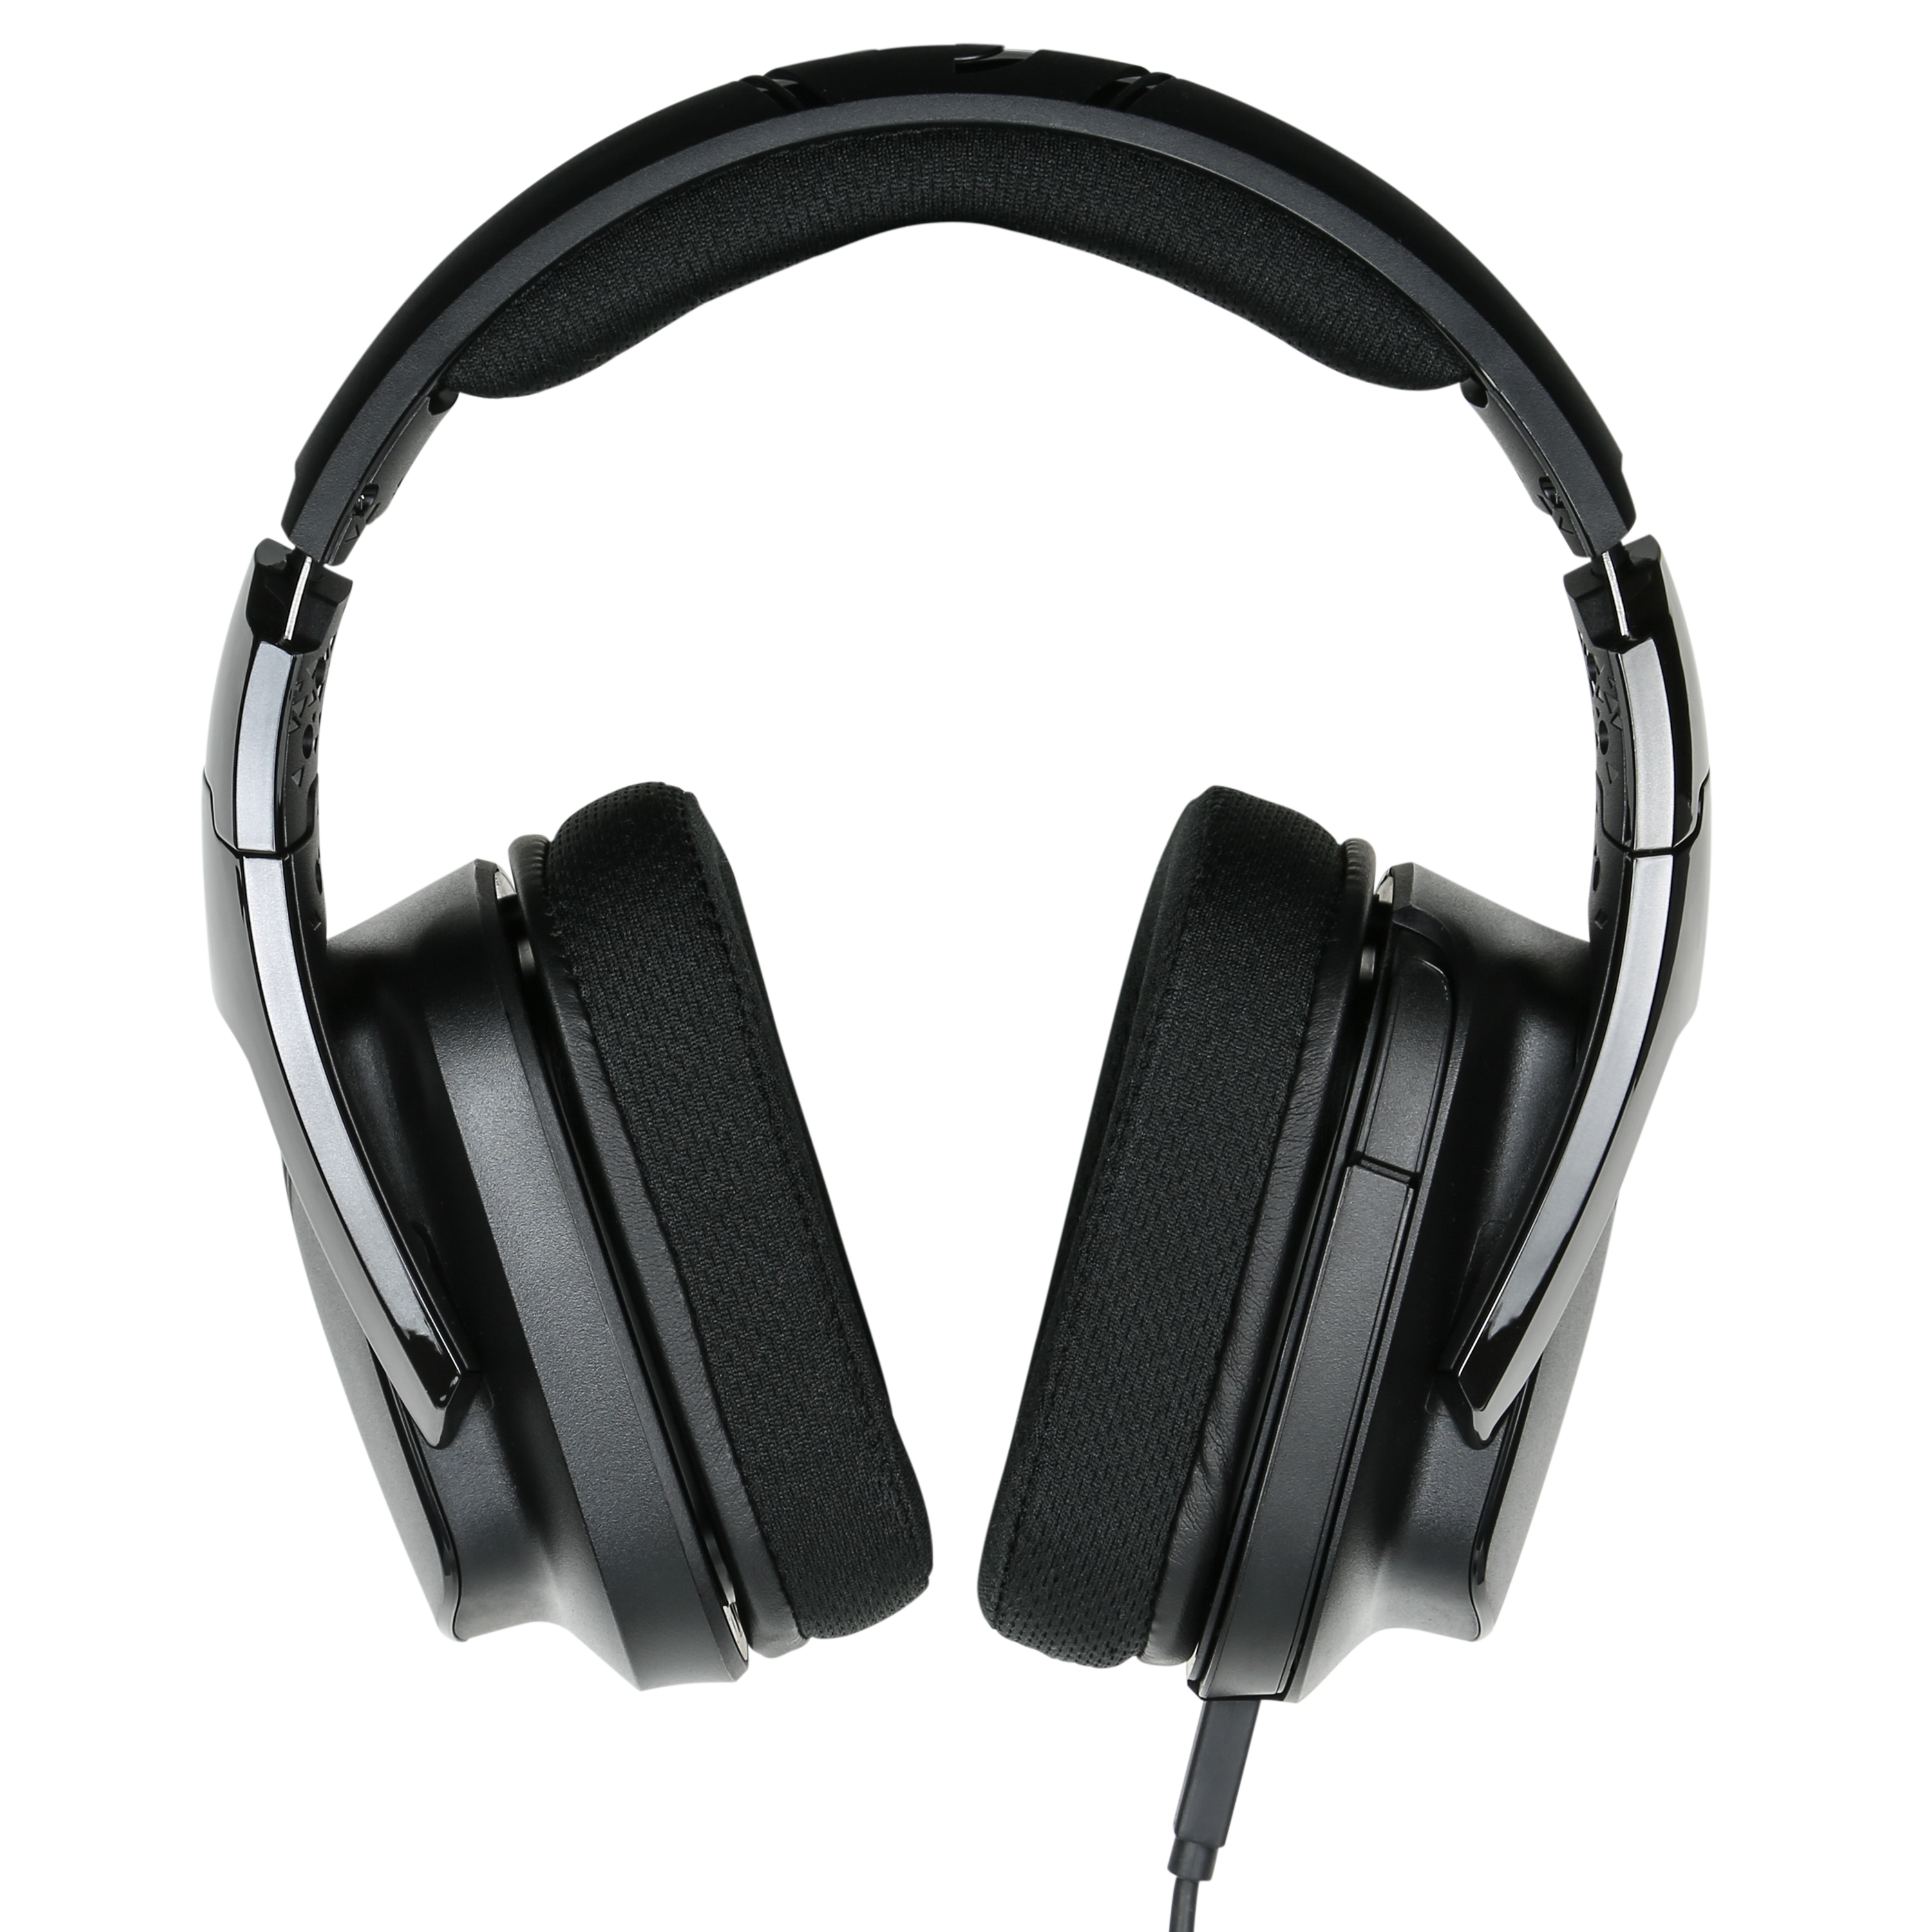 La experiencia definitiva de sonido envolvente: Logitech G935, los  auriculares gaming inalámbricos con tecnología Lightsync 7.1 